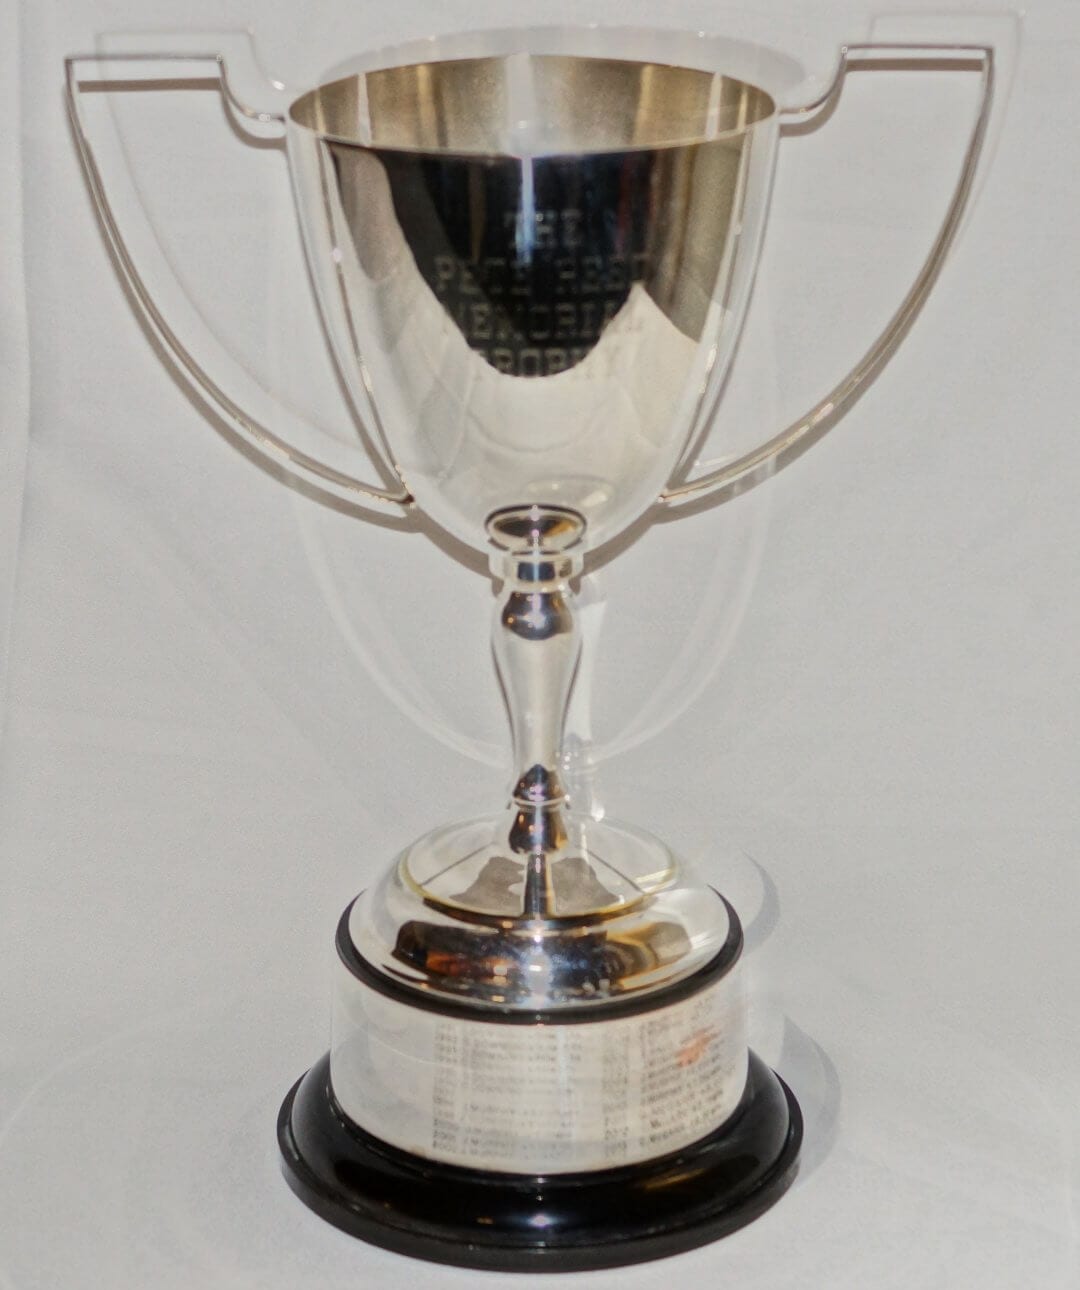 Pete Reed Memorial Trophy